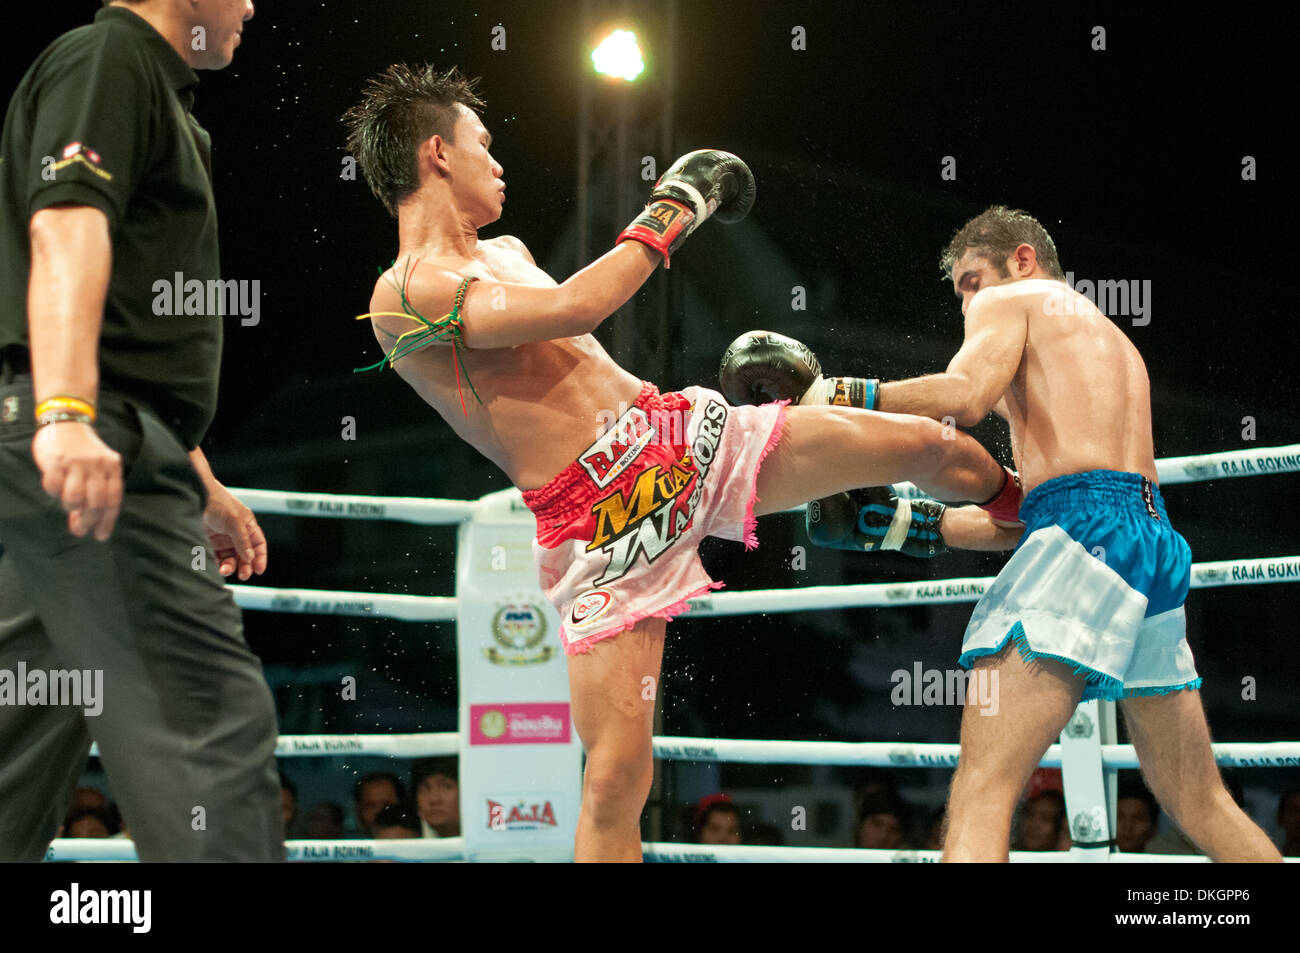 Paos de Kick Boxing o Muay Thai